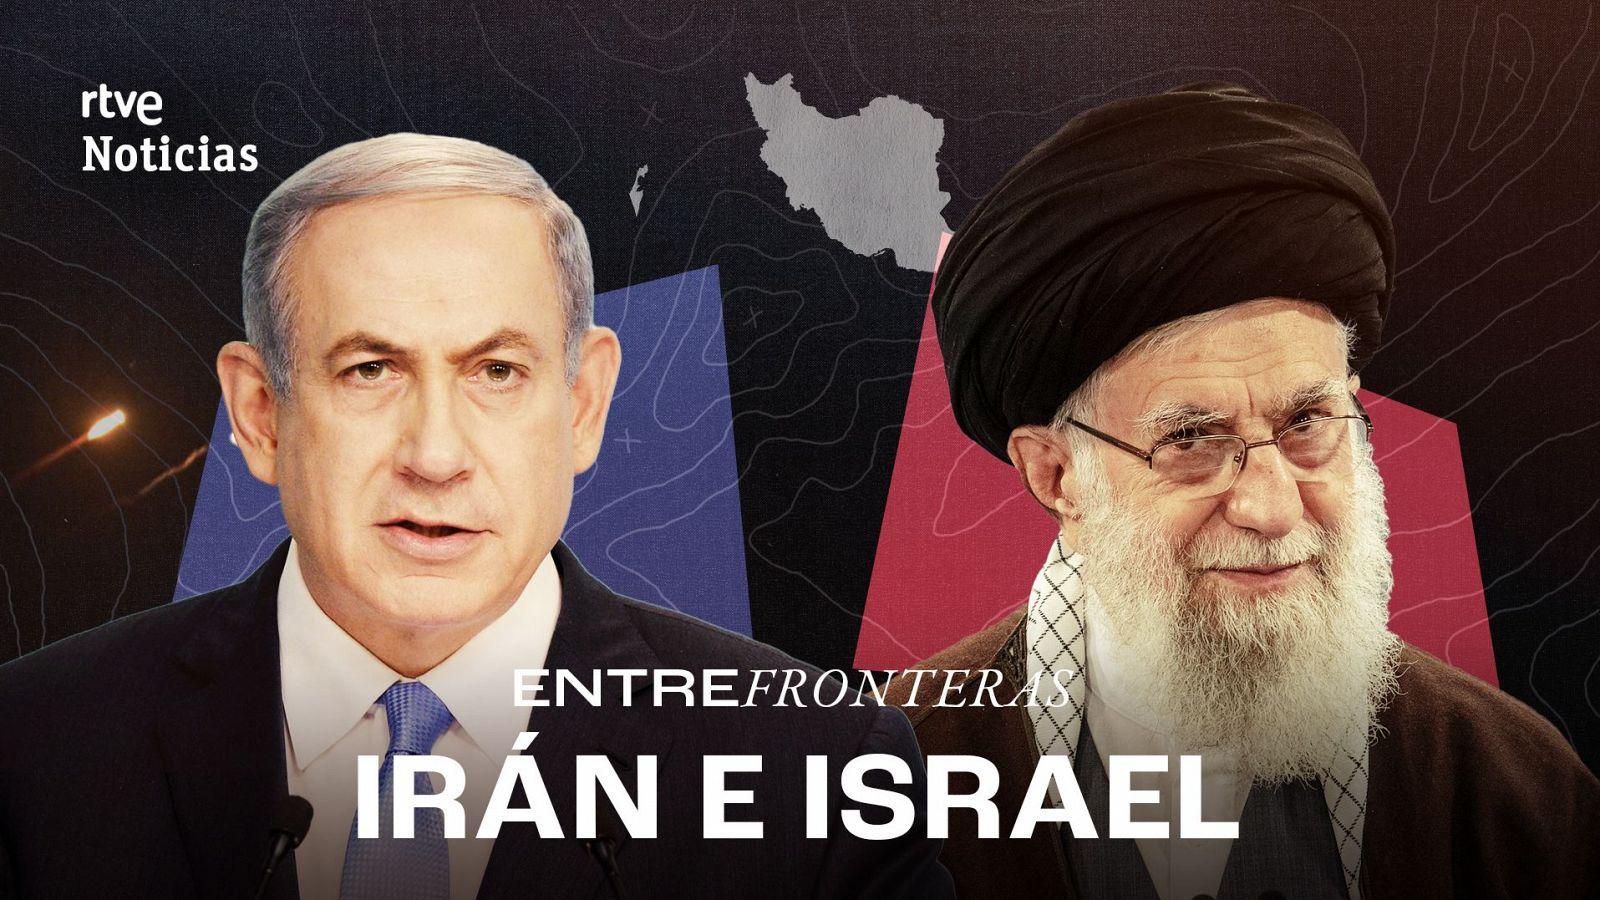 El conflicto entre Israel e Irán, explicado. ¿Más cerca de otra guerra en Oriente Próximo?